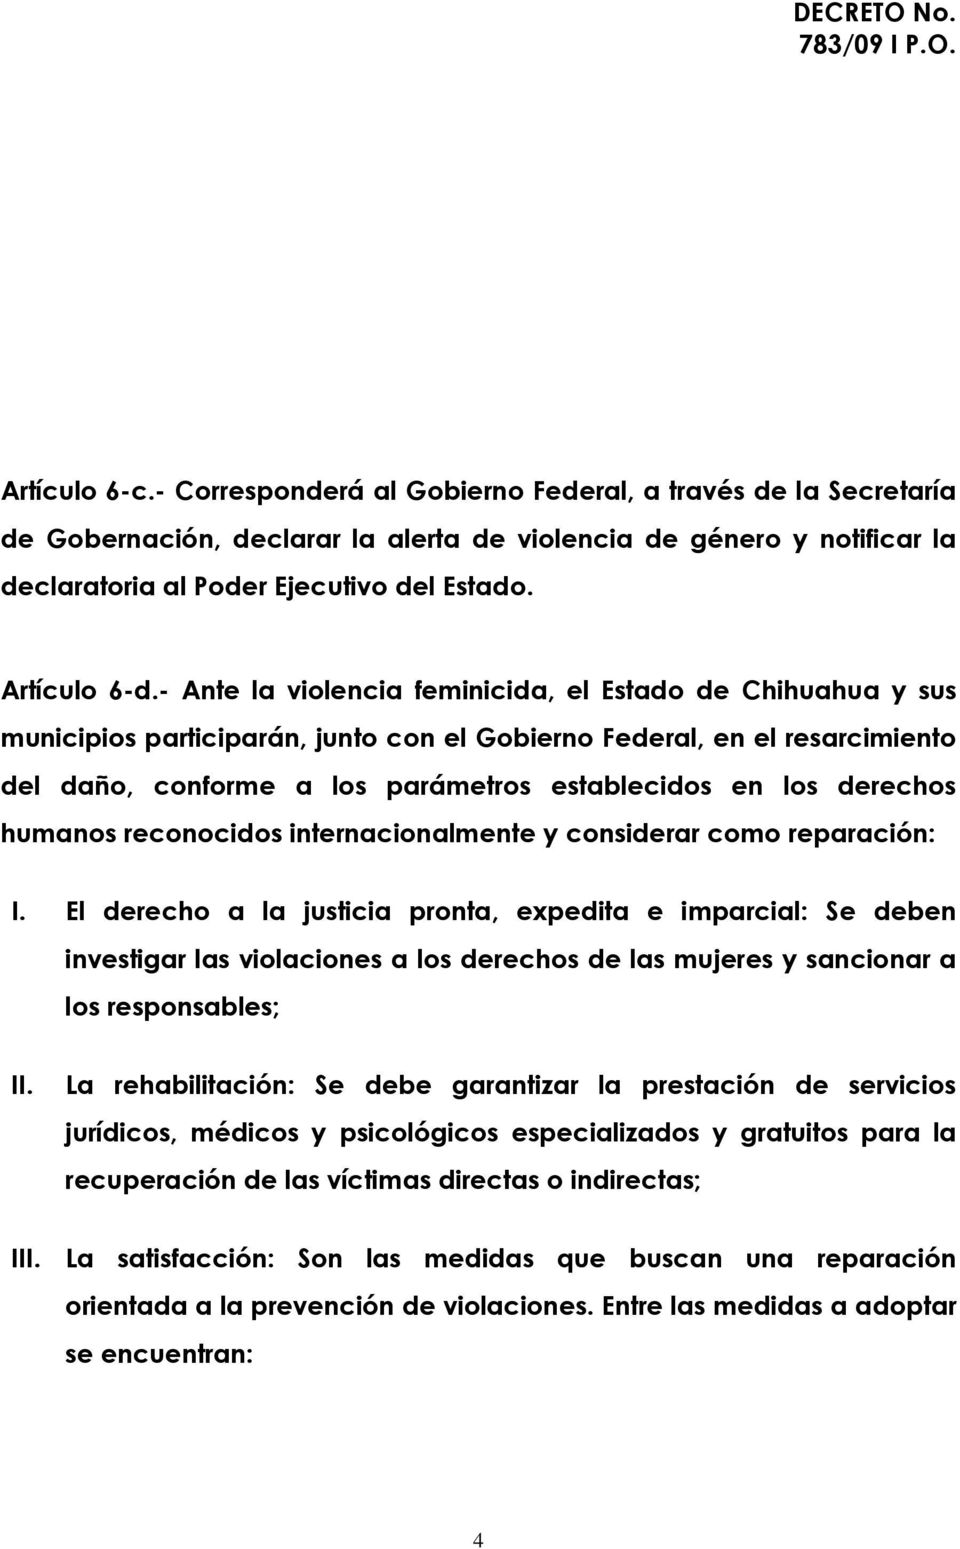 - Ante la violencia feminicida, el Estado de Chihuahua y sus municipios participarán, junto con el Gobierno Federal, en el resarcimiento del daño, conforme a los parámetros establecidos en los